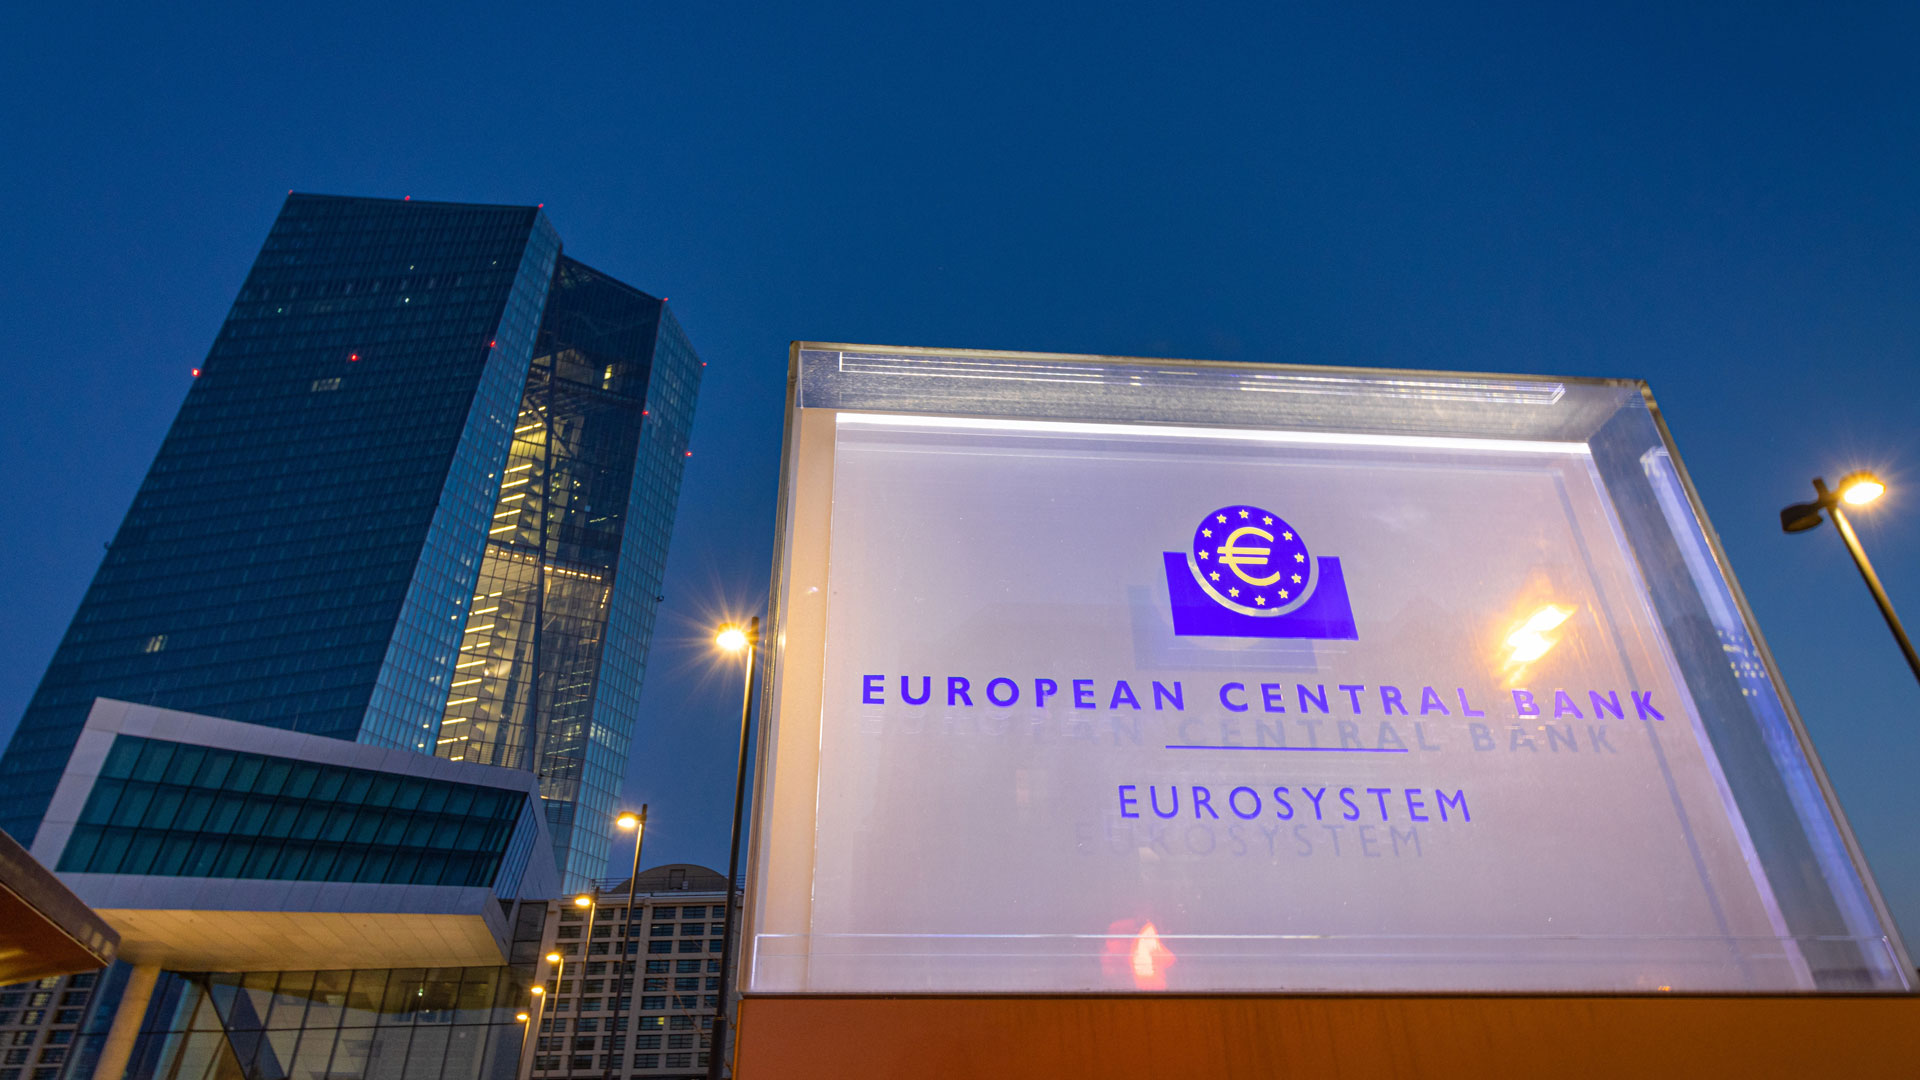 Haupteingang der Europäischen Zentralbank (EZB)  | picture alliance / greatif